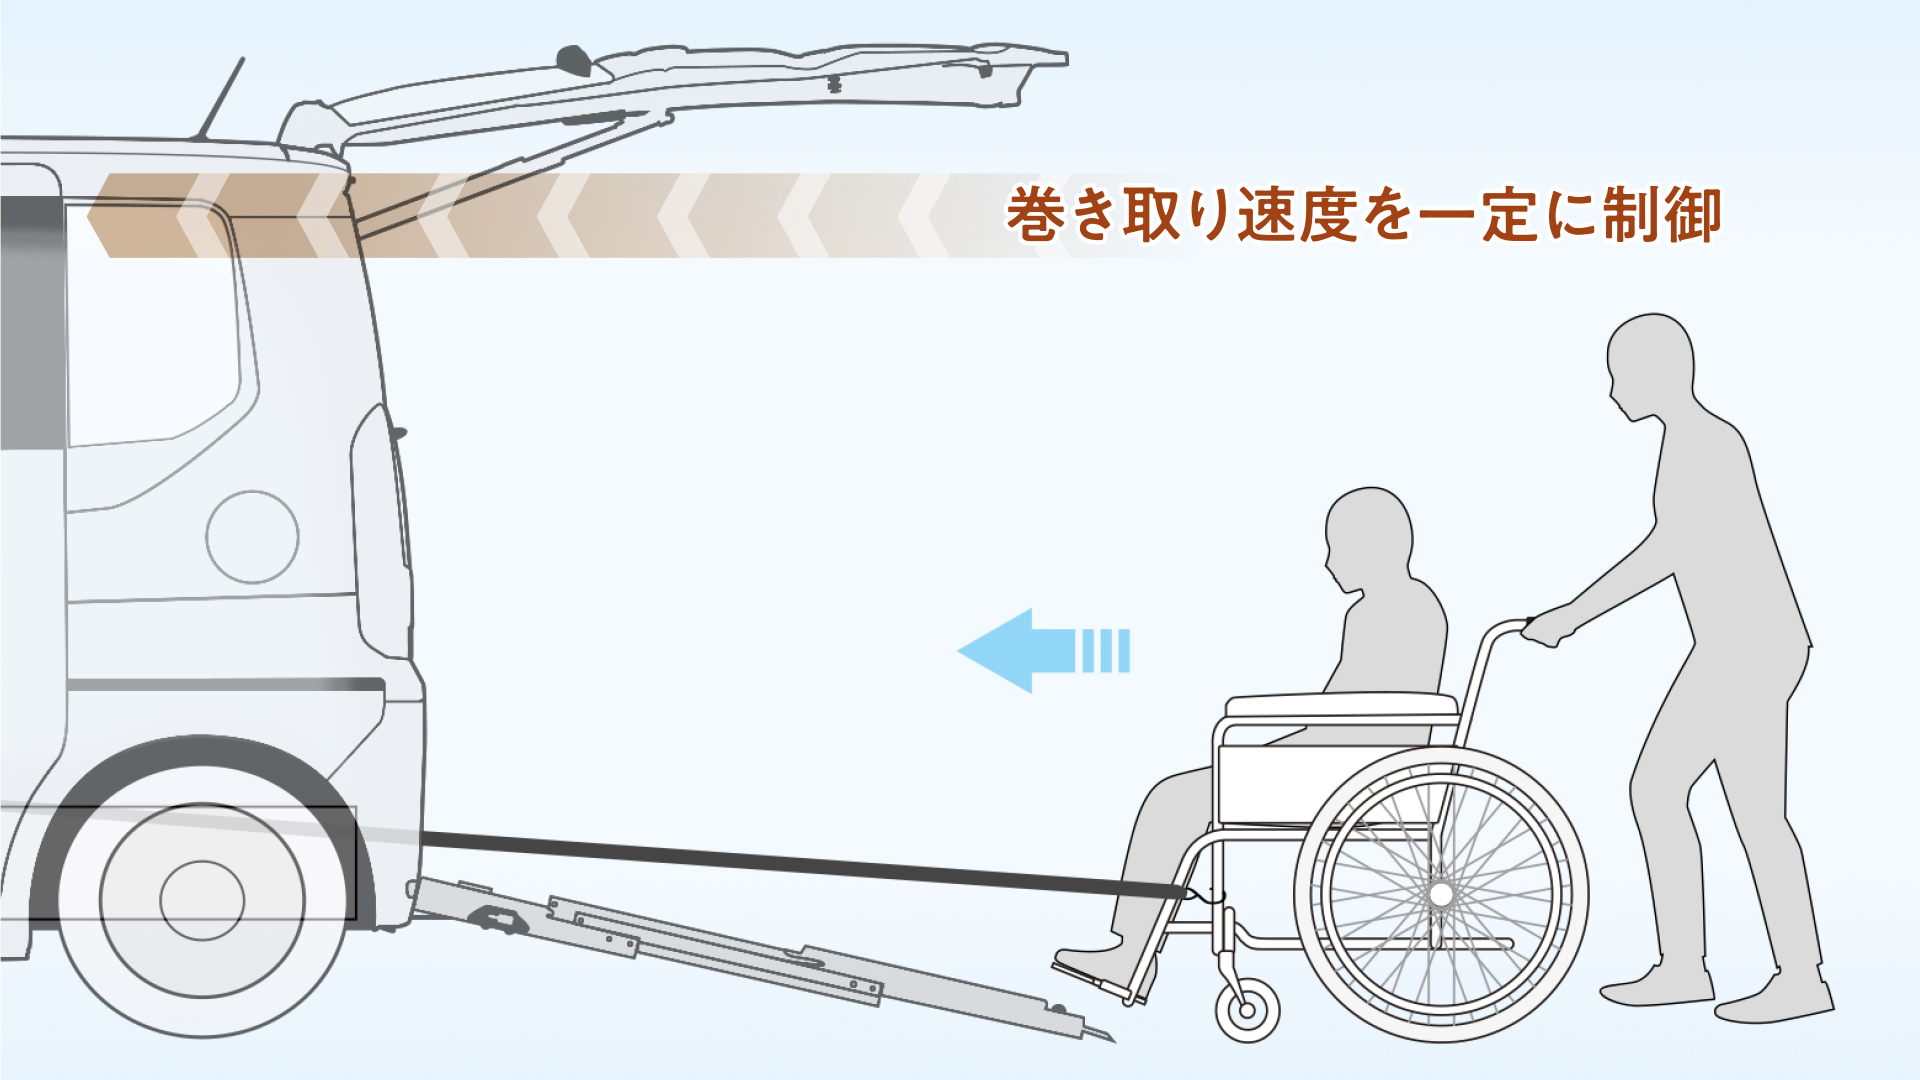 車いすを固定位置近くで減速。